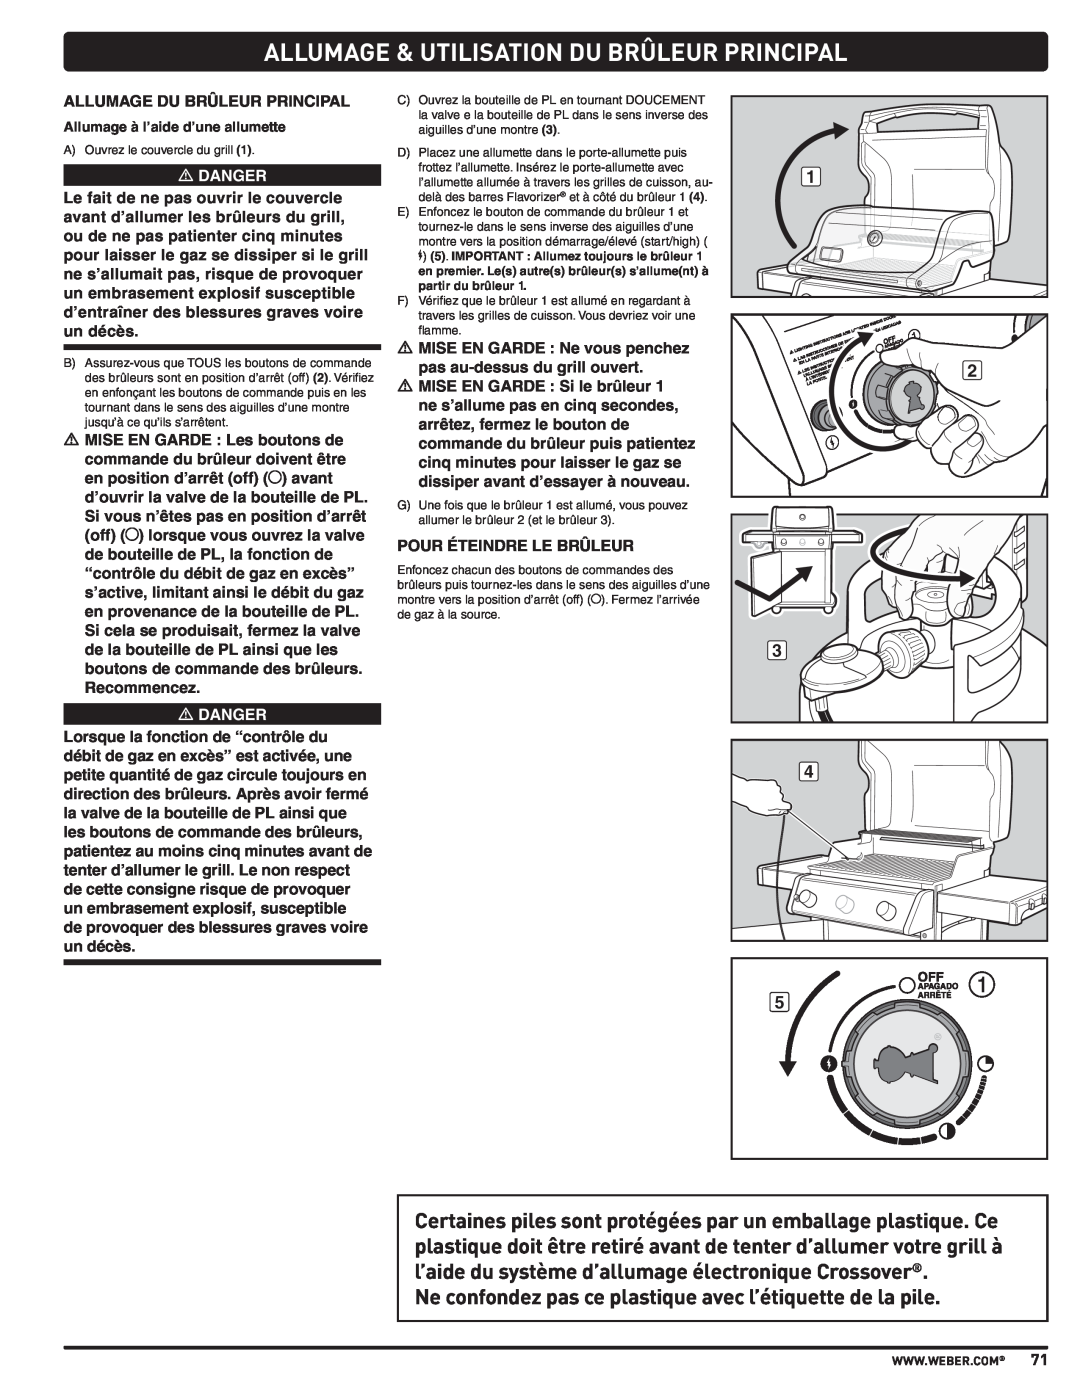 Weber PL - PG. 59 57205 manual Allumage & Utilisation Du Brûleur Principal, m DANGER, Allumage à l’aide d’une allumette 